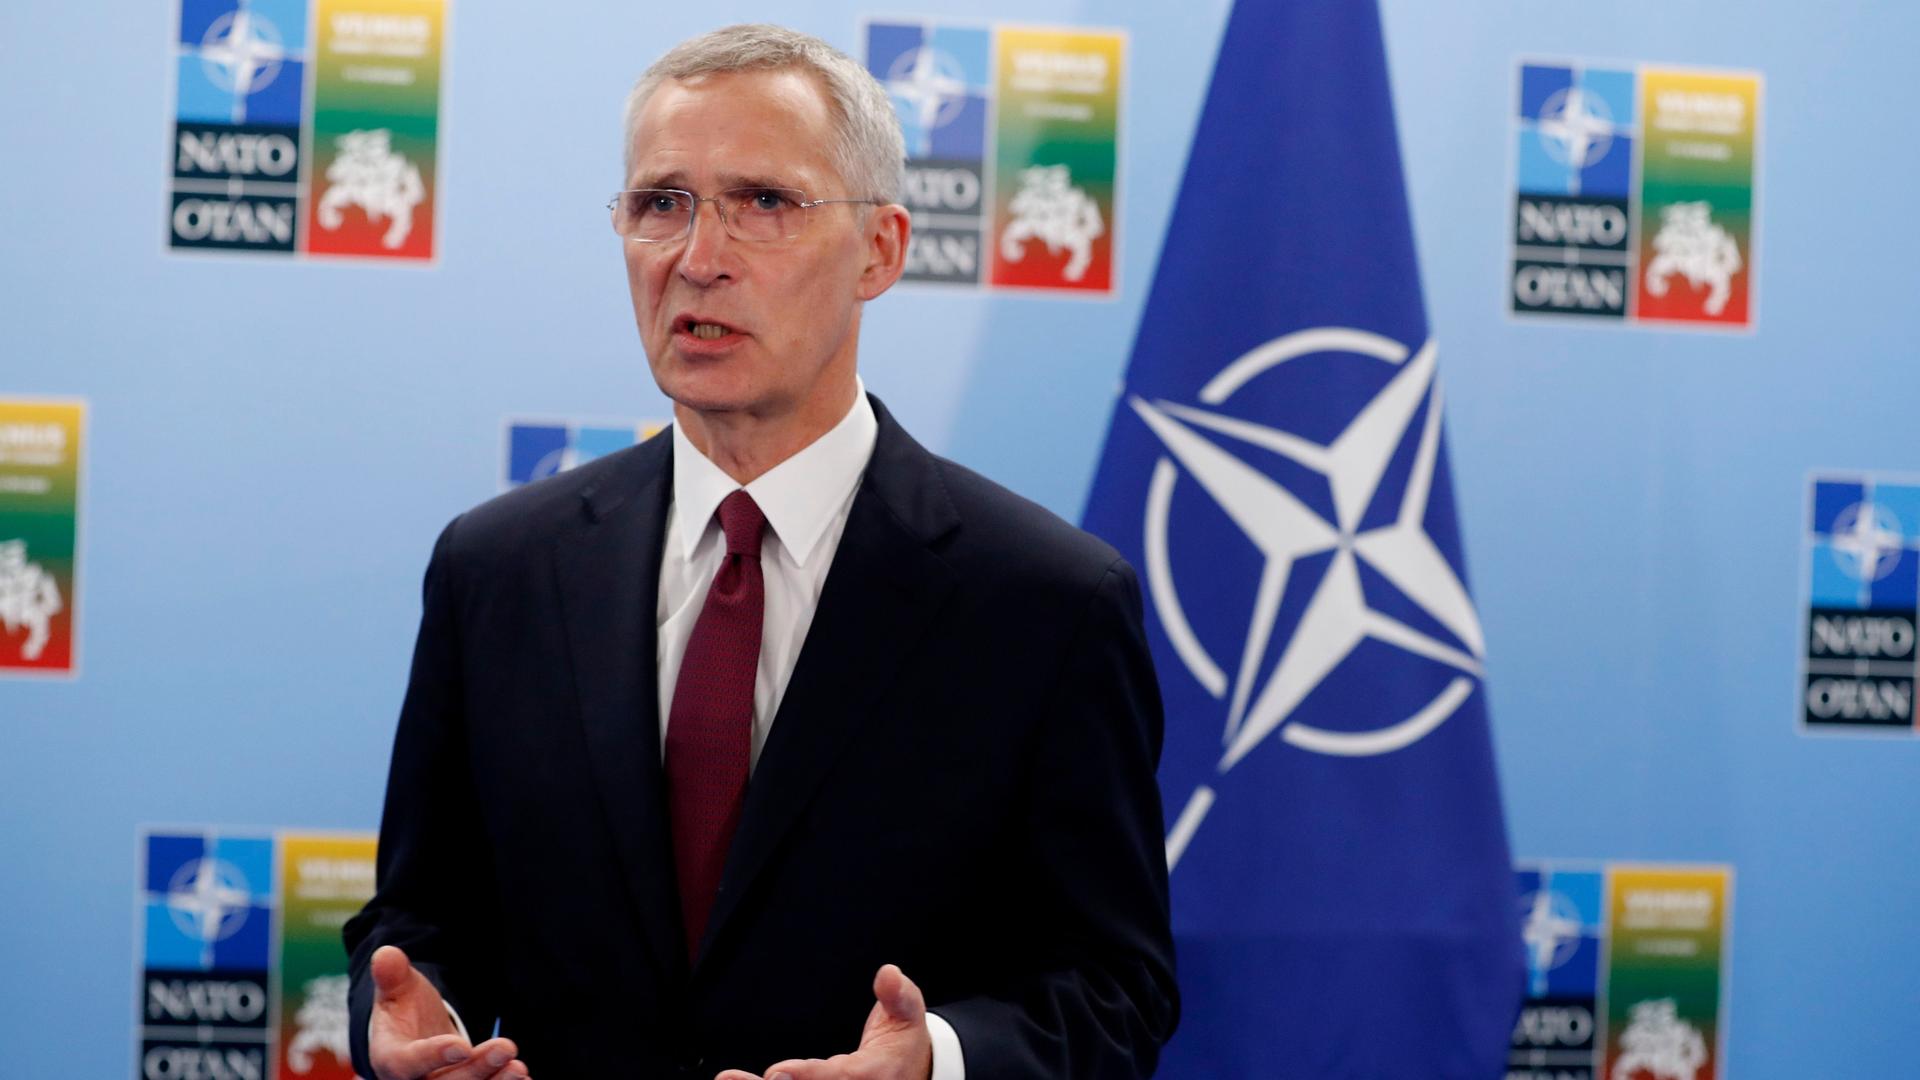 Stoltenberg bei einer Pressekonferenz. Im Hintergrund ist eine blaue Flagge mit dem Symbol der NATO zu sehen.